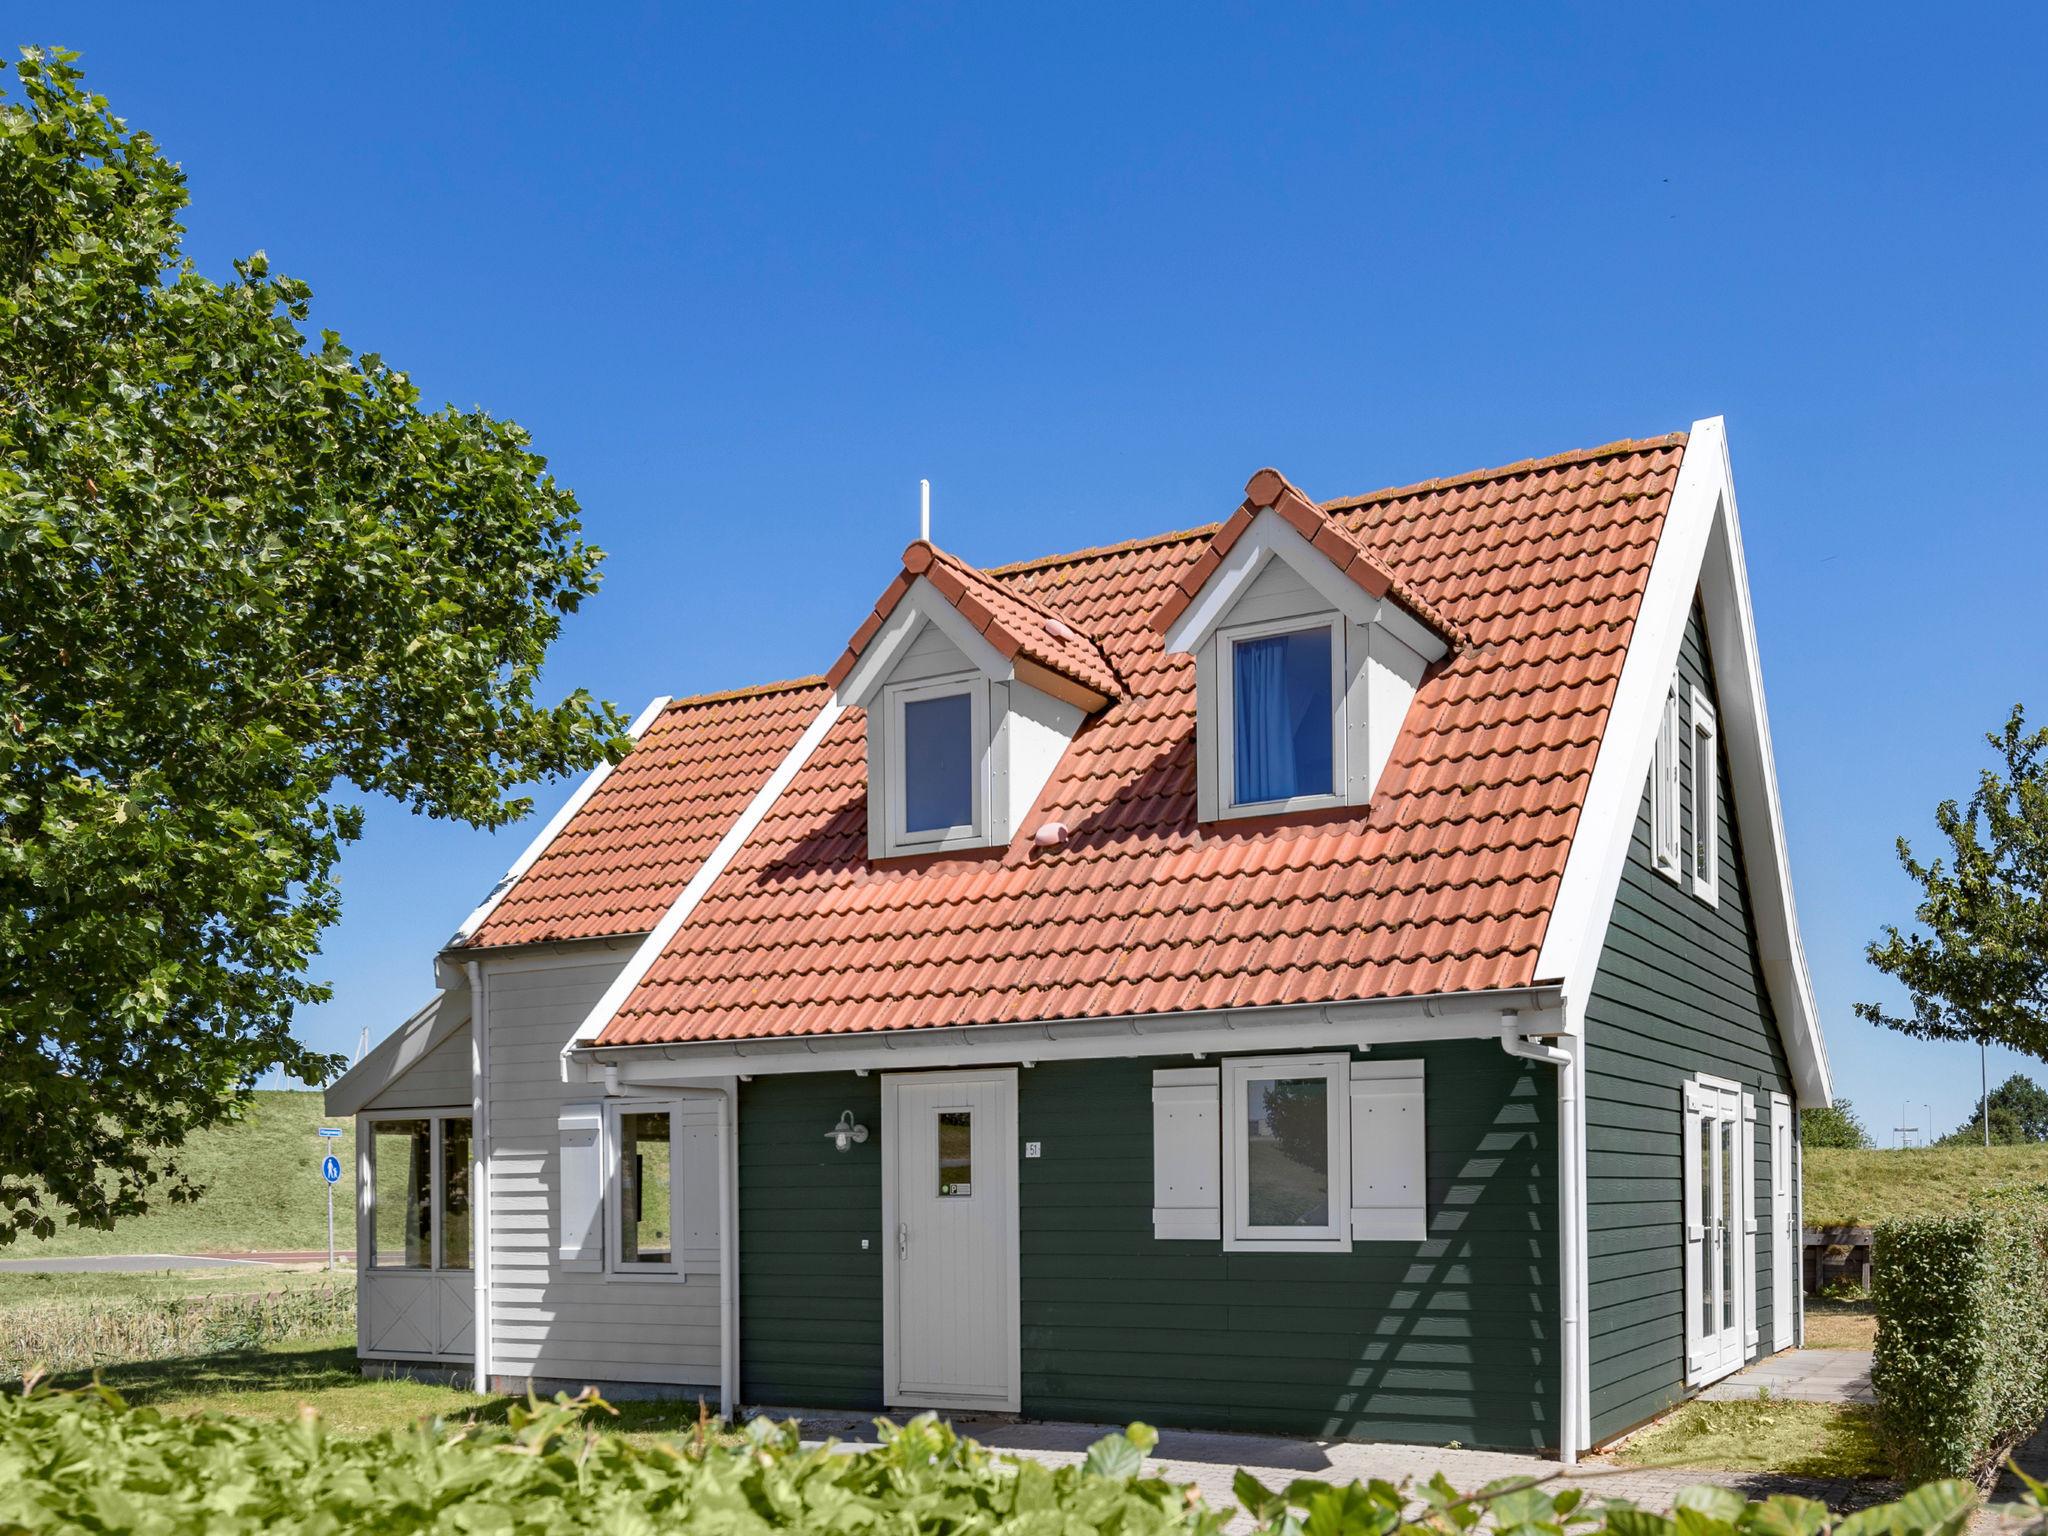 Gerestylde villa voor 8 personen op vakantiepark Aquadelta, nabij het Grevelingenmeer